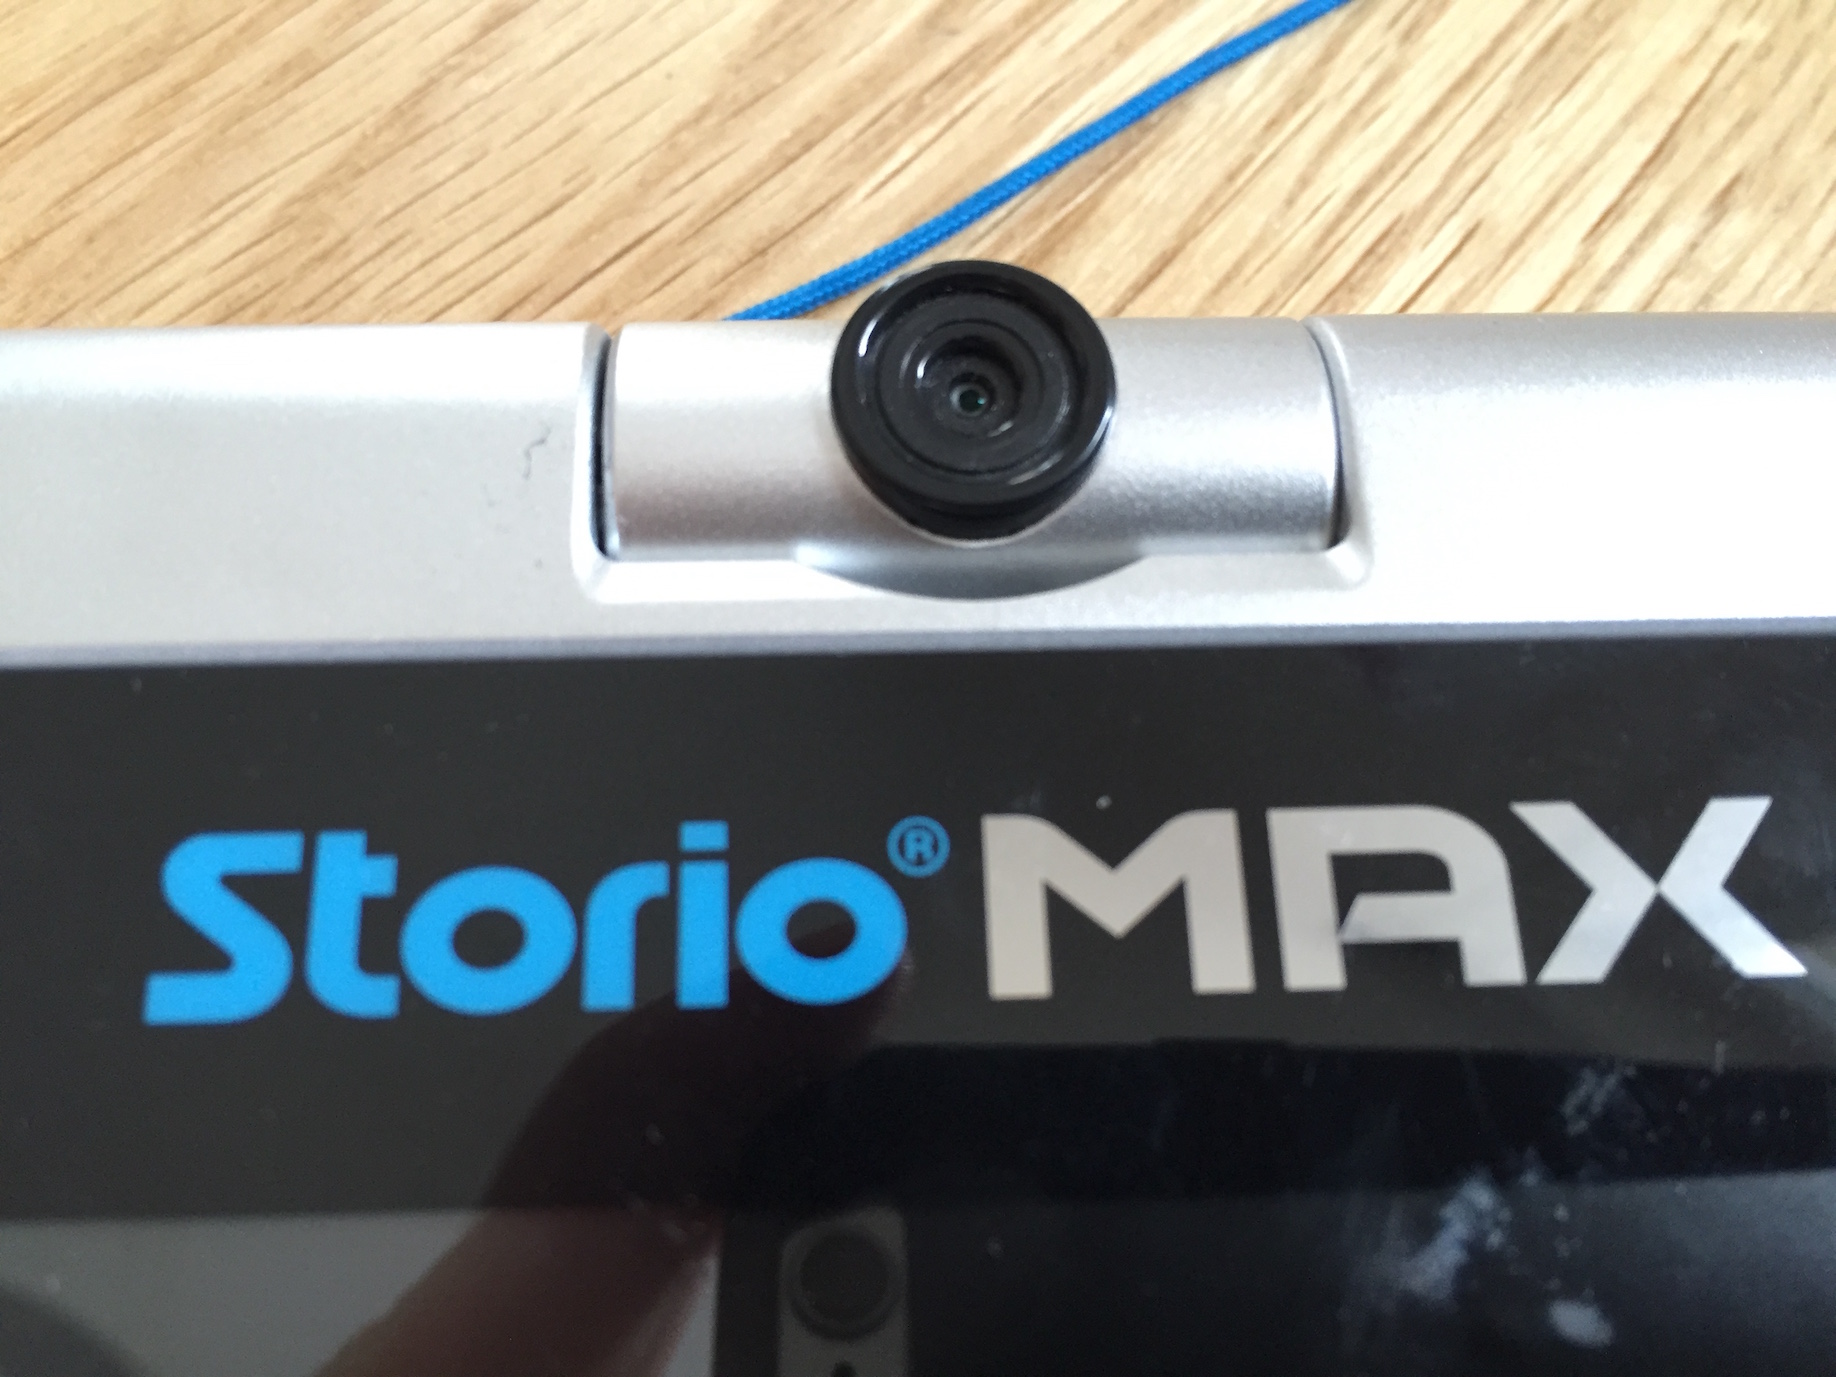 Storio - etui support bleu pour tablette storio max 5, jeux educatifs